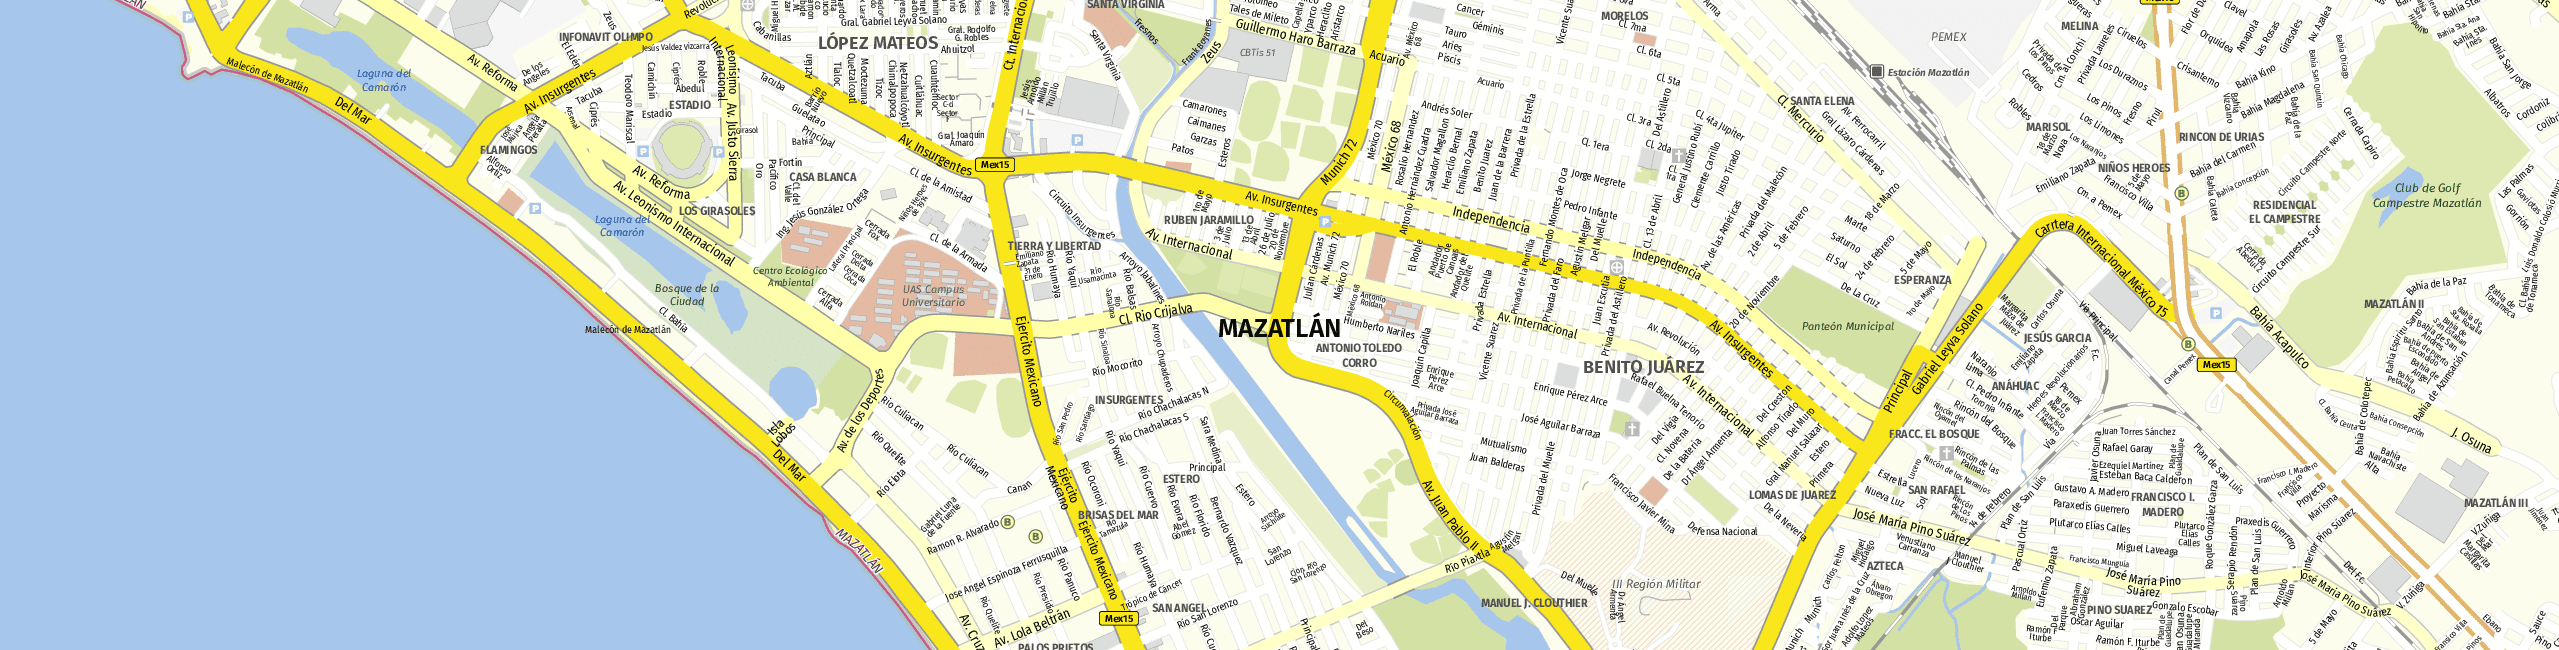 Stadtplan Mazatlán zum Downloaden.